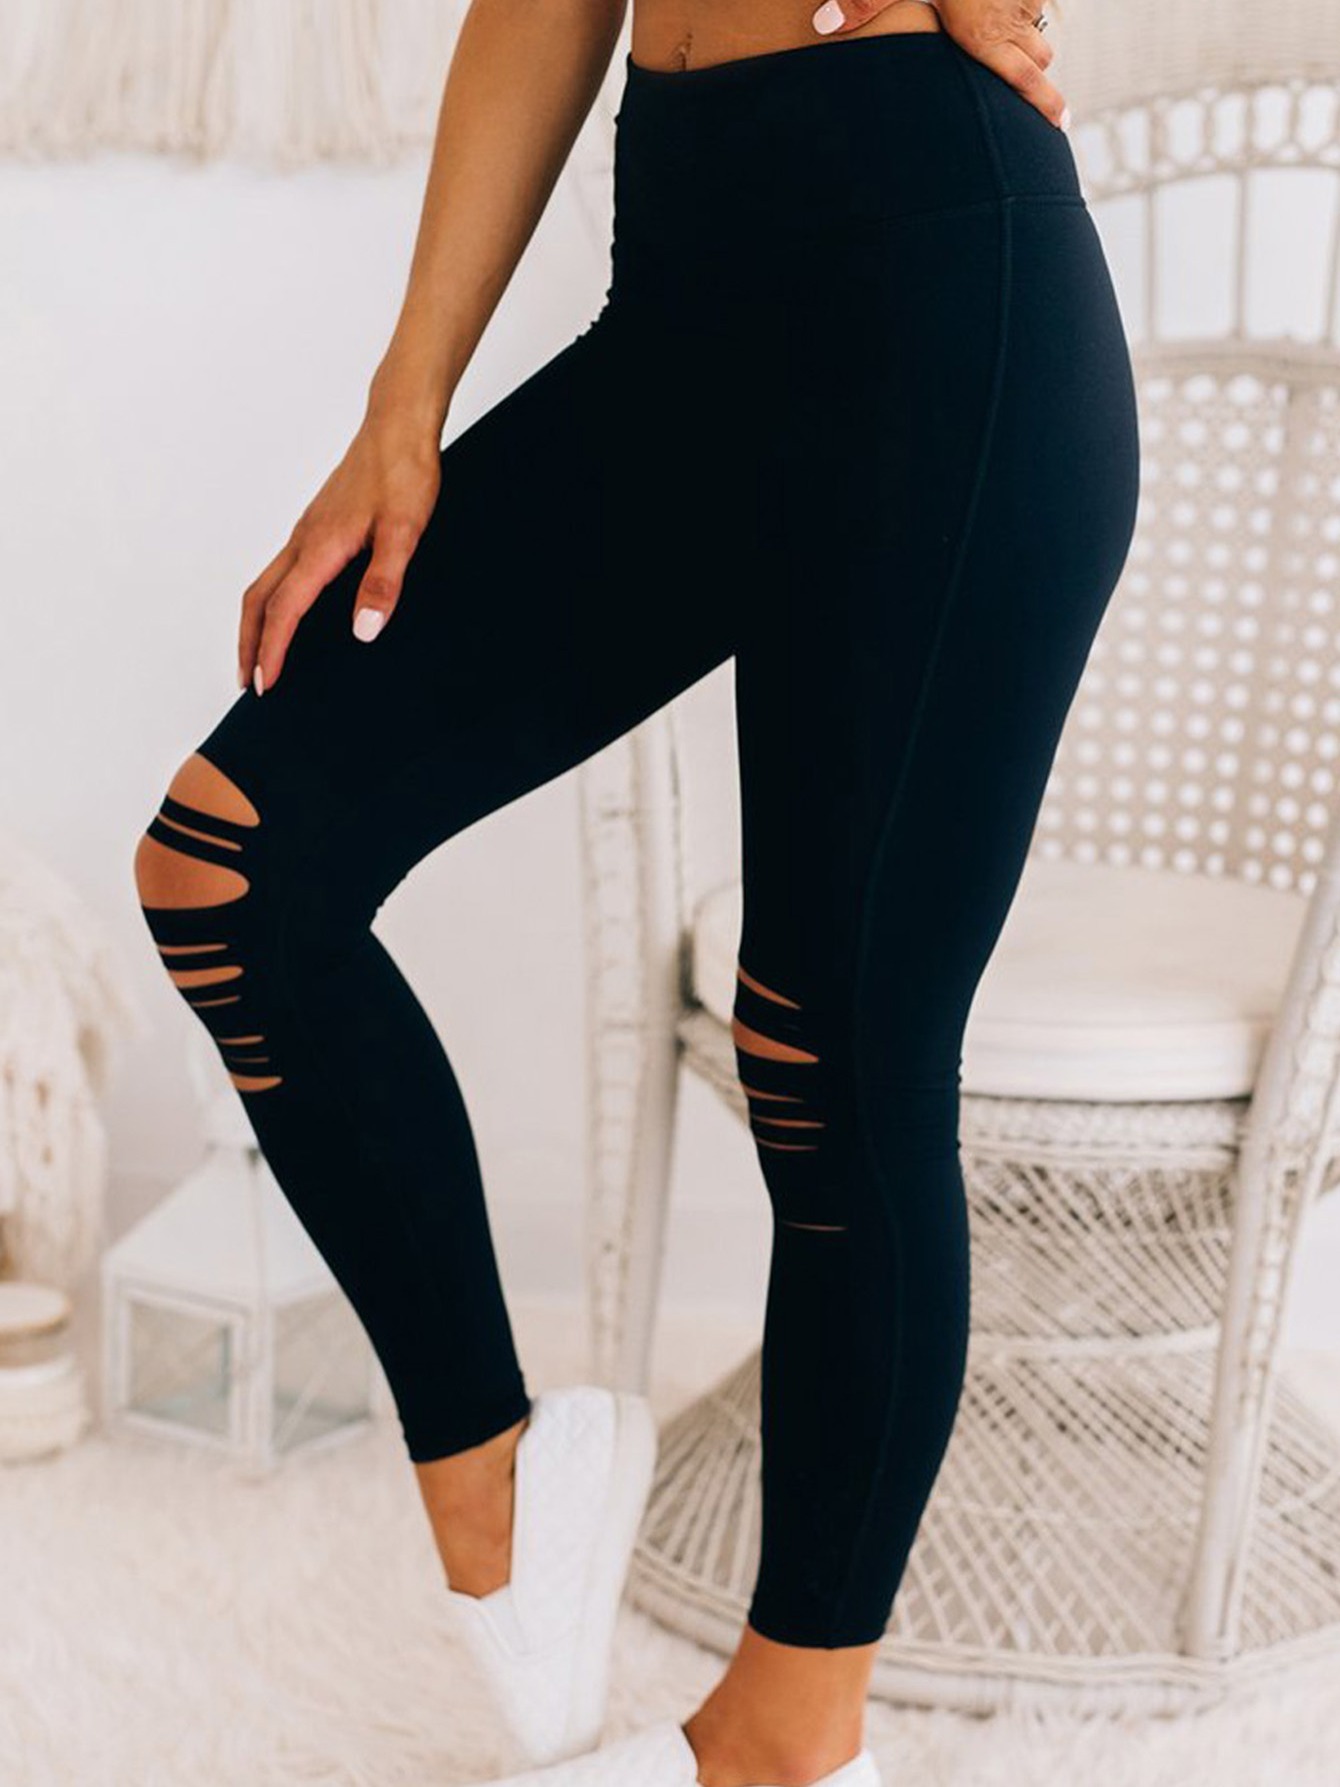  EFJONE Pantalones negros para mujer, cintura alta, rasgados,  ajustados, recortados, leggings : Ropa, Zapatos y Joyería